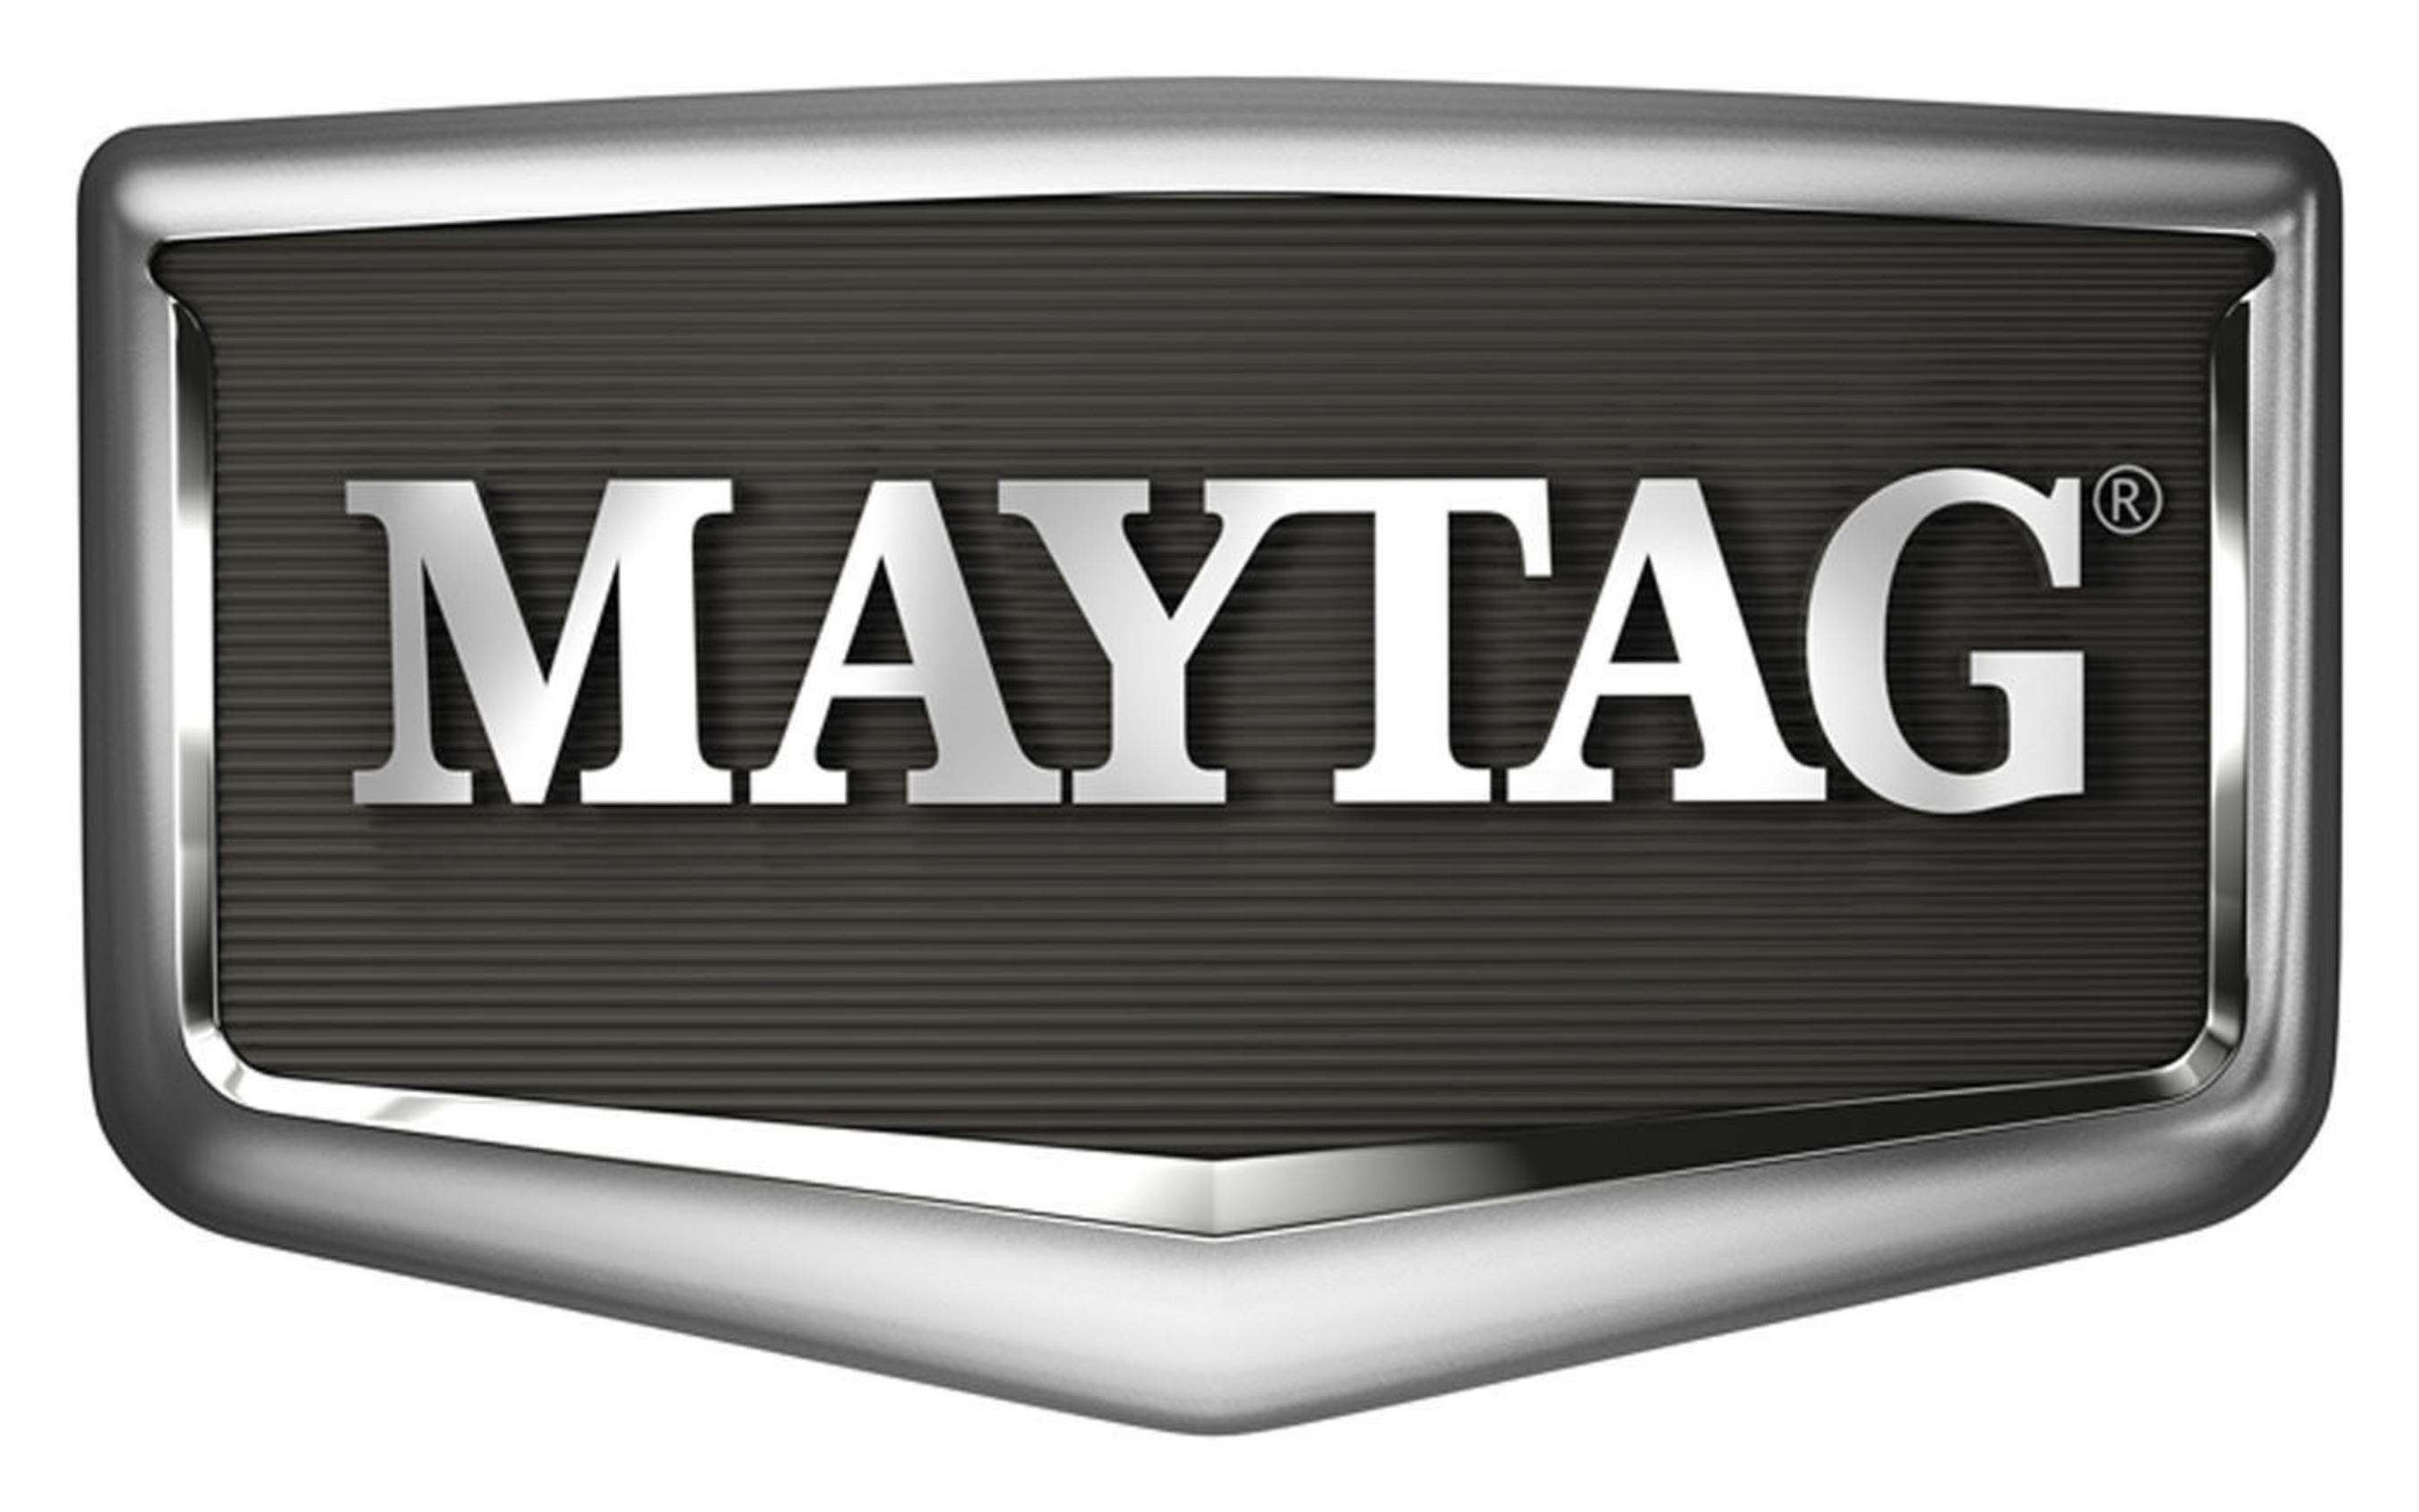 Maytag. (PRNewsFoto/Maytag Brand) (PRNewsFoto/)